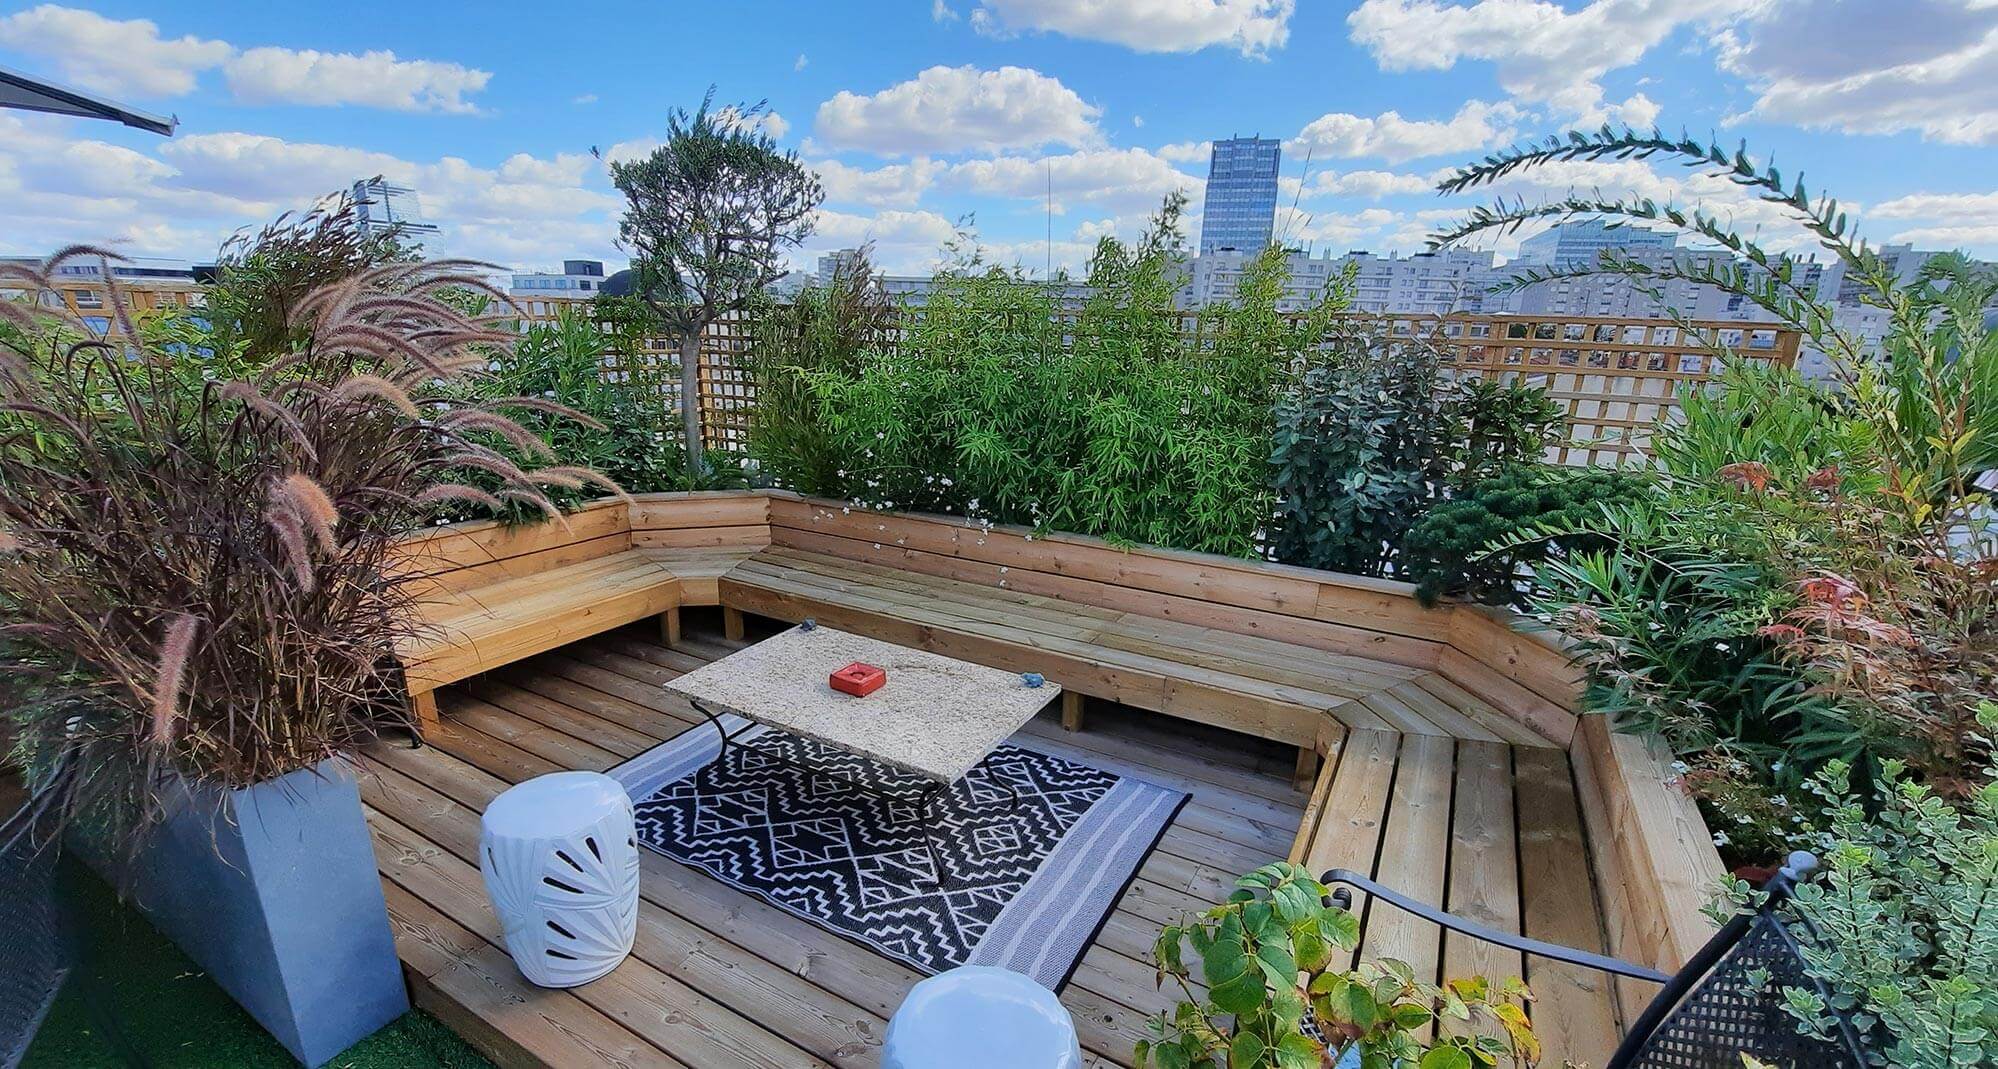 Le jardin terrasse : aménagement paysager et création d'un espace